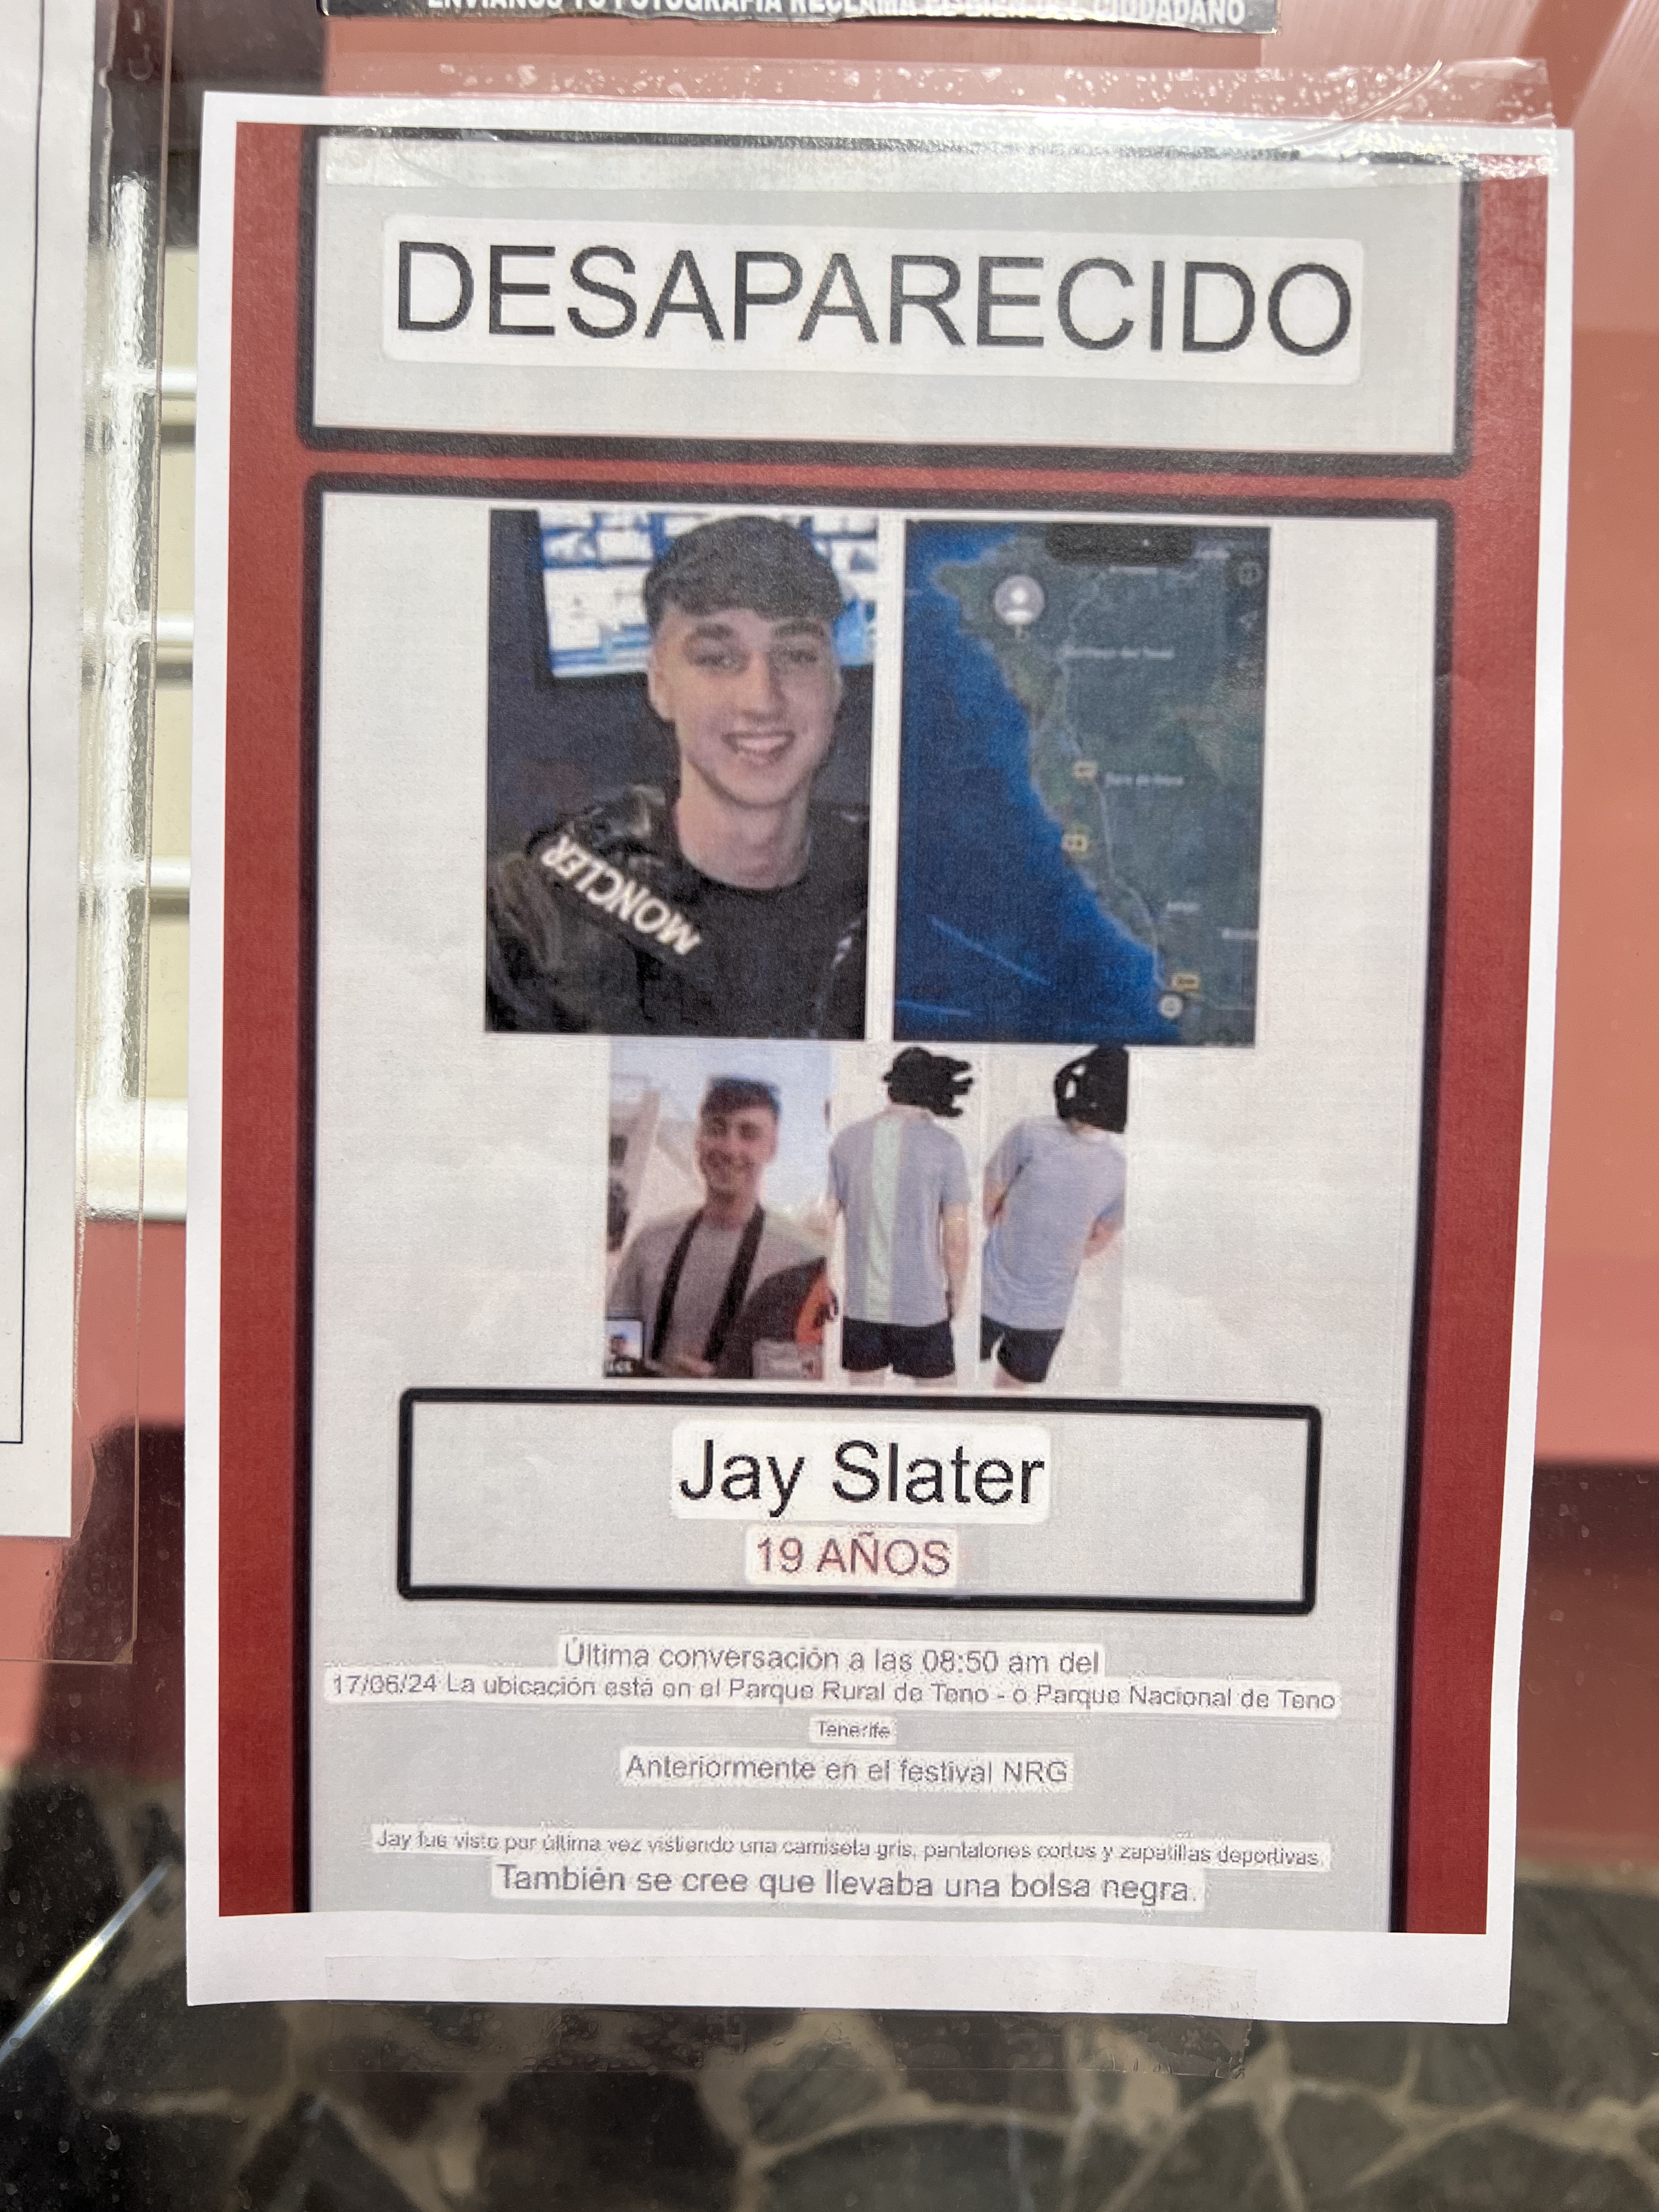 Des affiches de personnes disparues ont été vues partout à Tenerife au cours des quatre dernières semaines